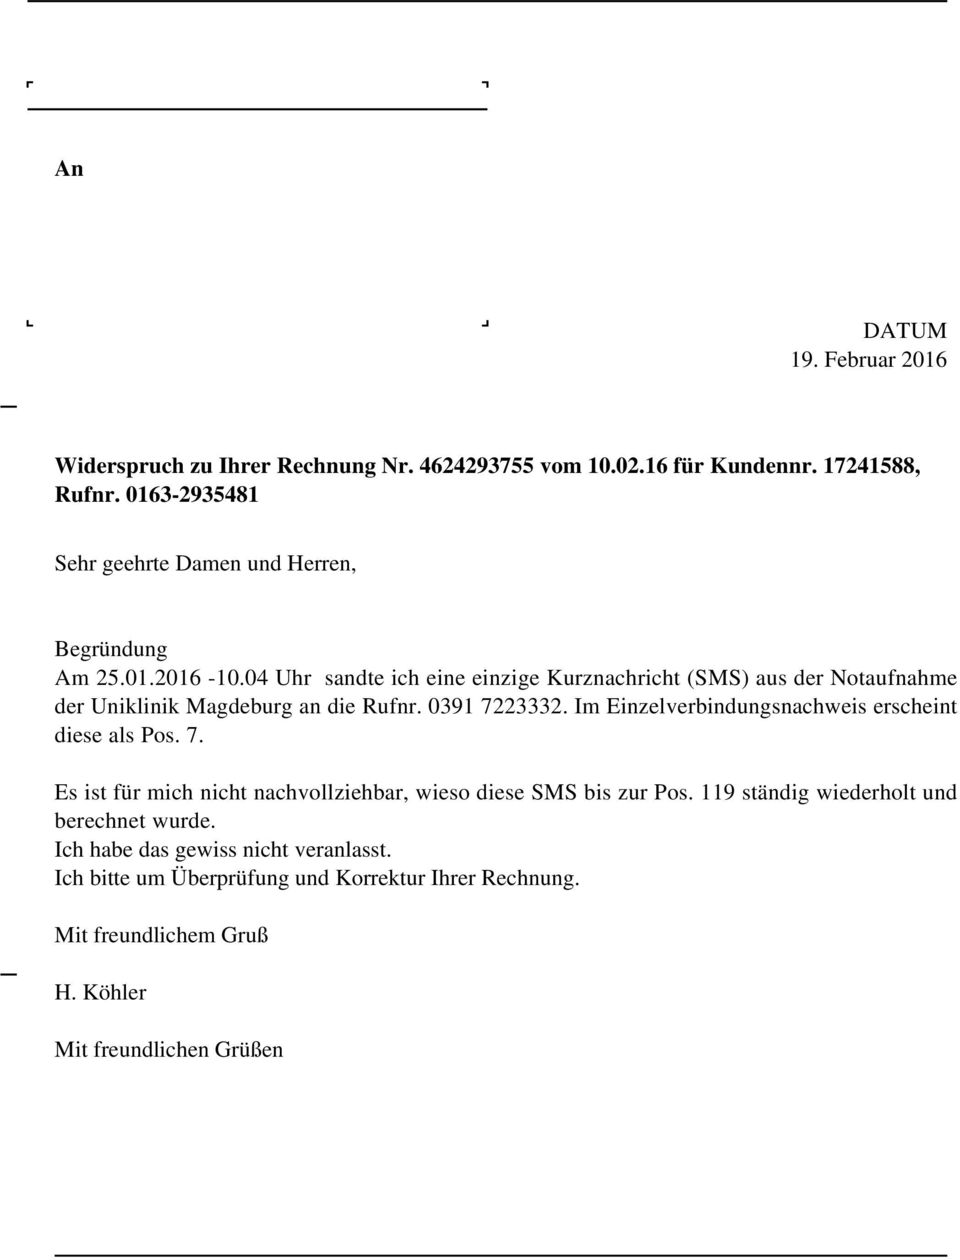 04 Uhr sandte ich eine einzige Kurznachricht (SMS) aus der Notaufnahme der Uniklinik Magdeburg an die Rufnr. 0391 7223332.